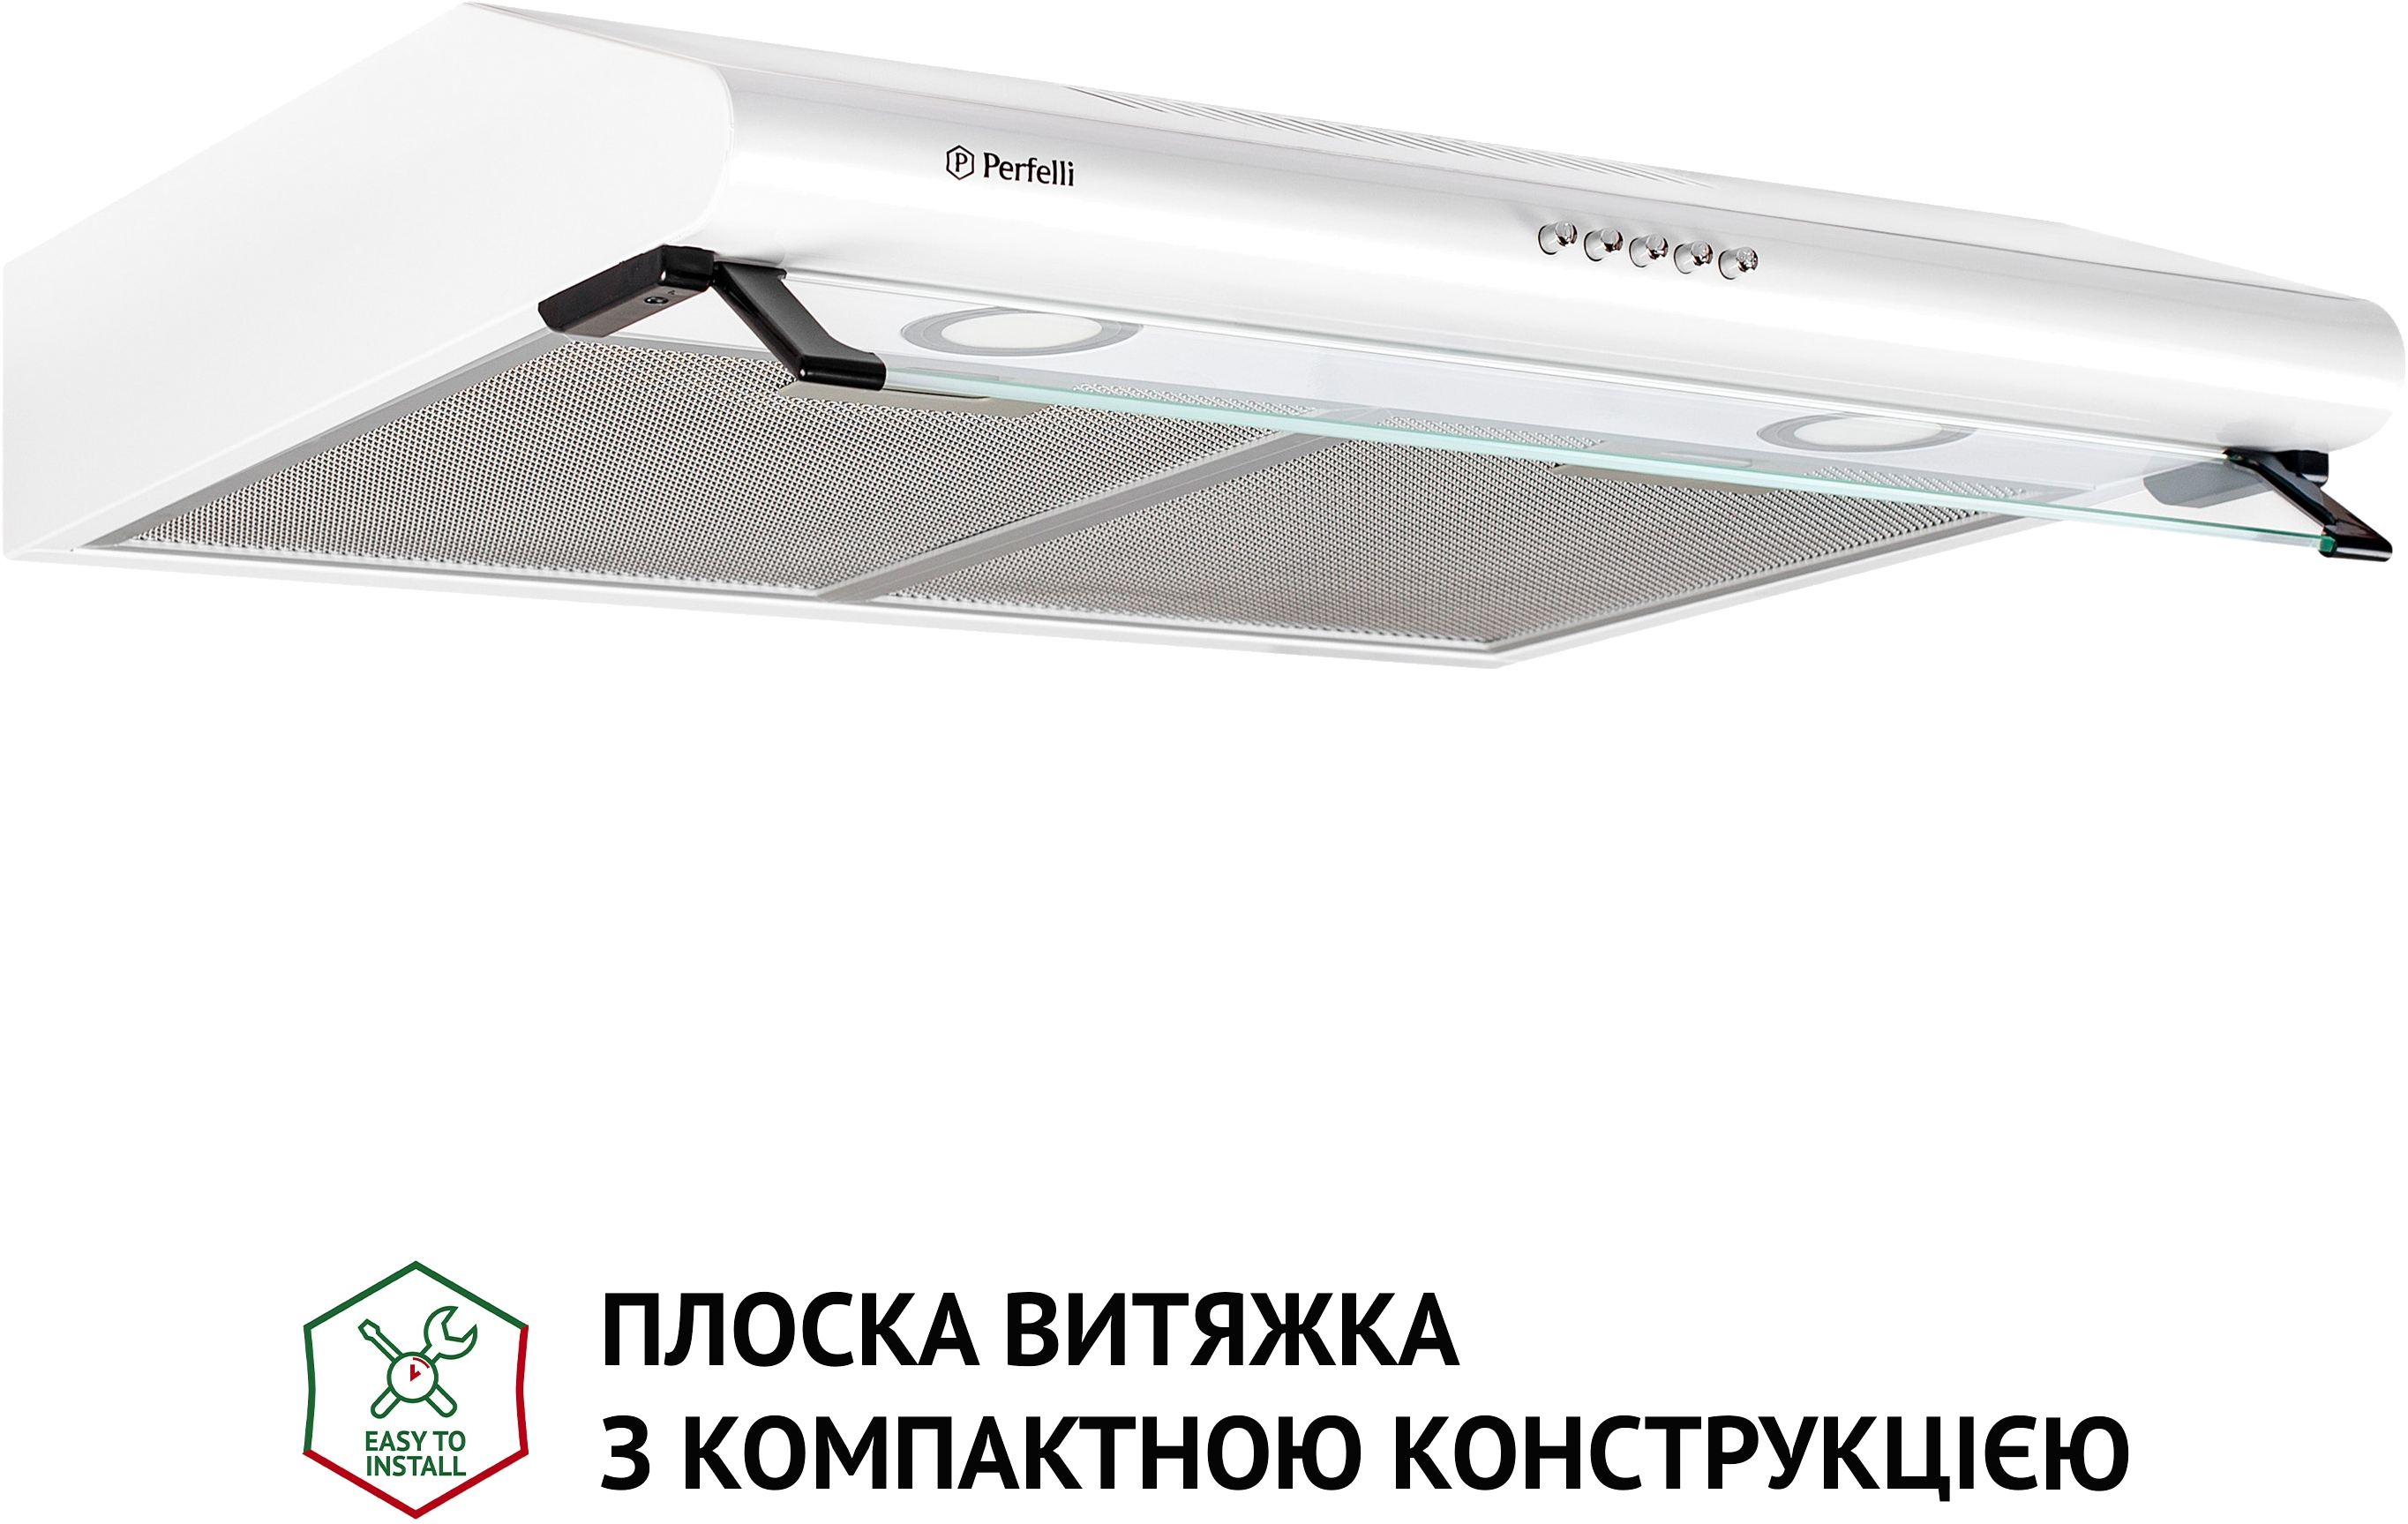 Вытяжка кухонная Perfelli PL 6042 W LED цена 2899.00 грн - фотография 2